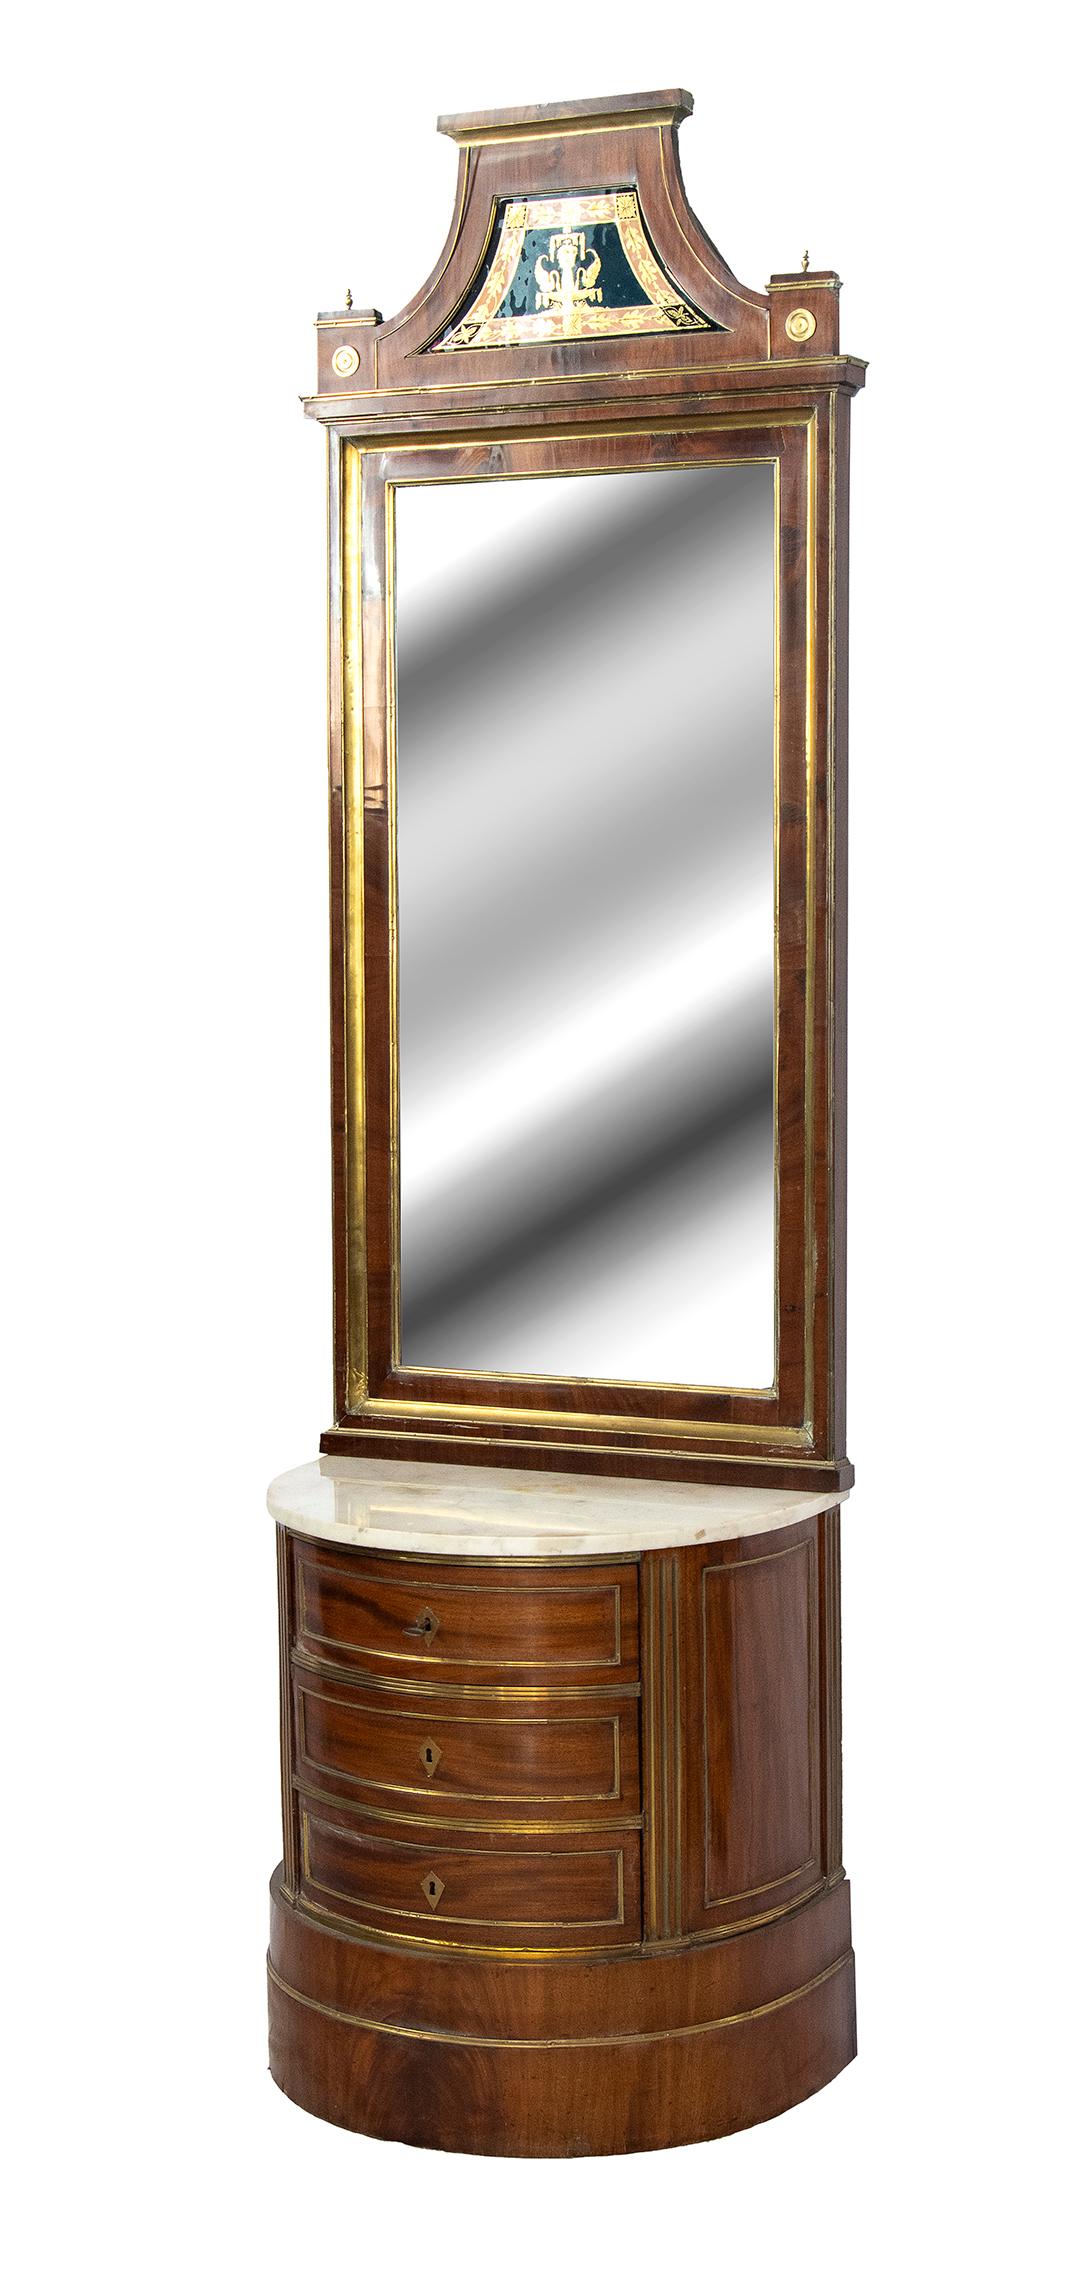 Commode Biedermeier avec miroir - provenance Russie, début du 19ème siècle( c. 1820s)
En forme de croissant, avec un plateau en marbre blanc de Carrare, trois tiroirs, base sans pied. Bronzes dorés sur les bords des tiroirs et sur le bord du